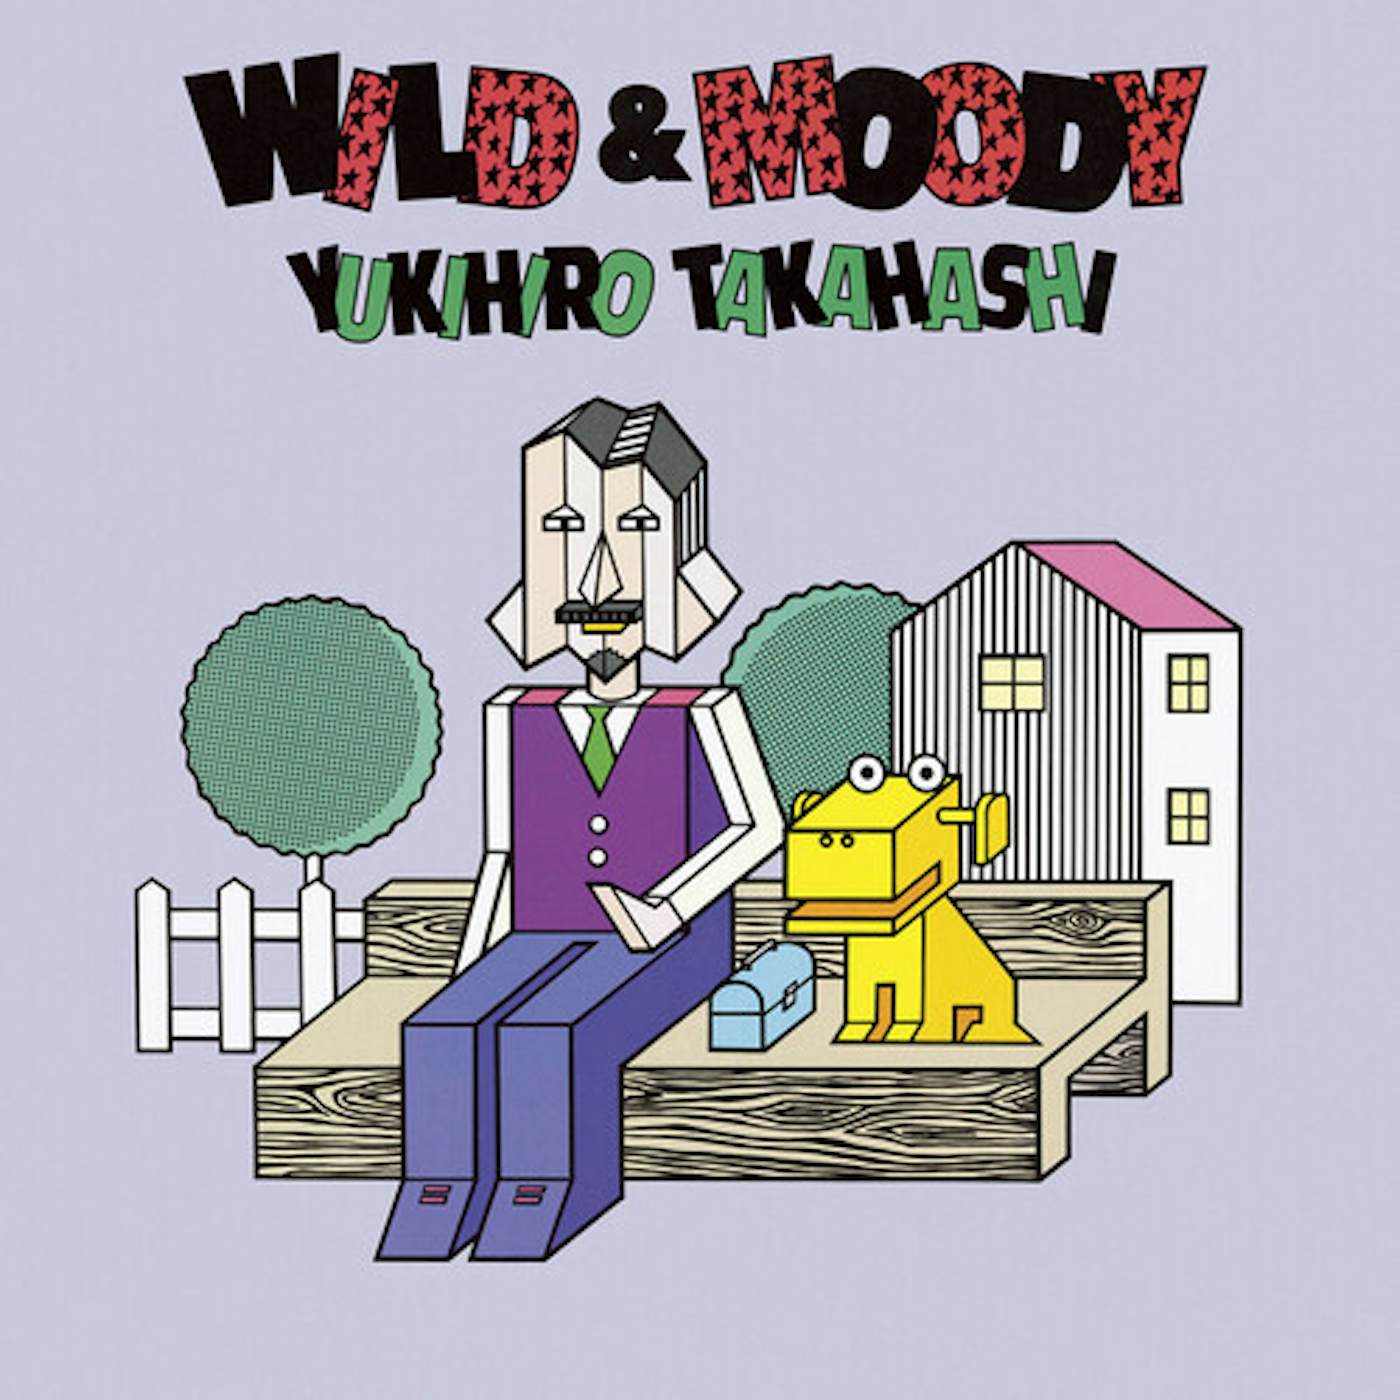 Yukihiro Takahashi Wild & Moody Vinyl Record